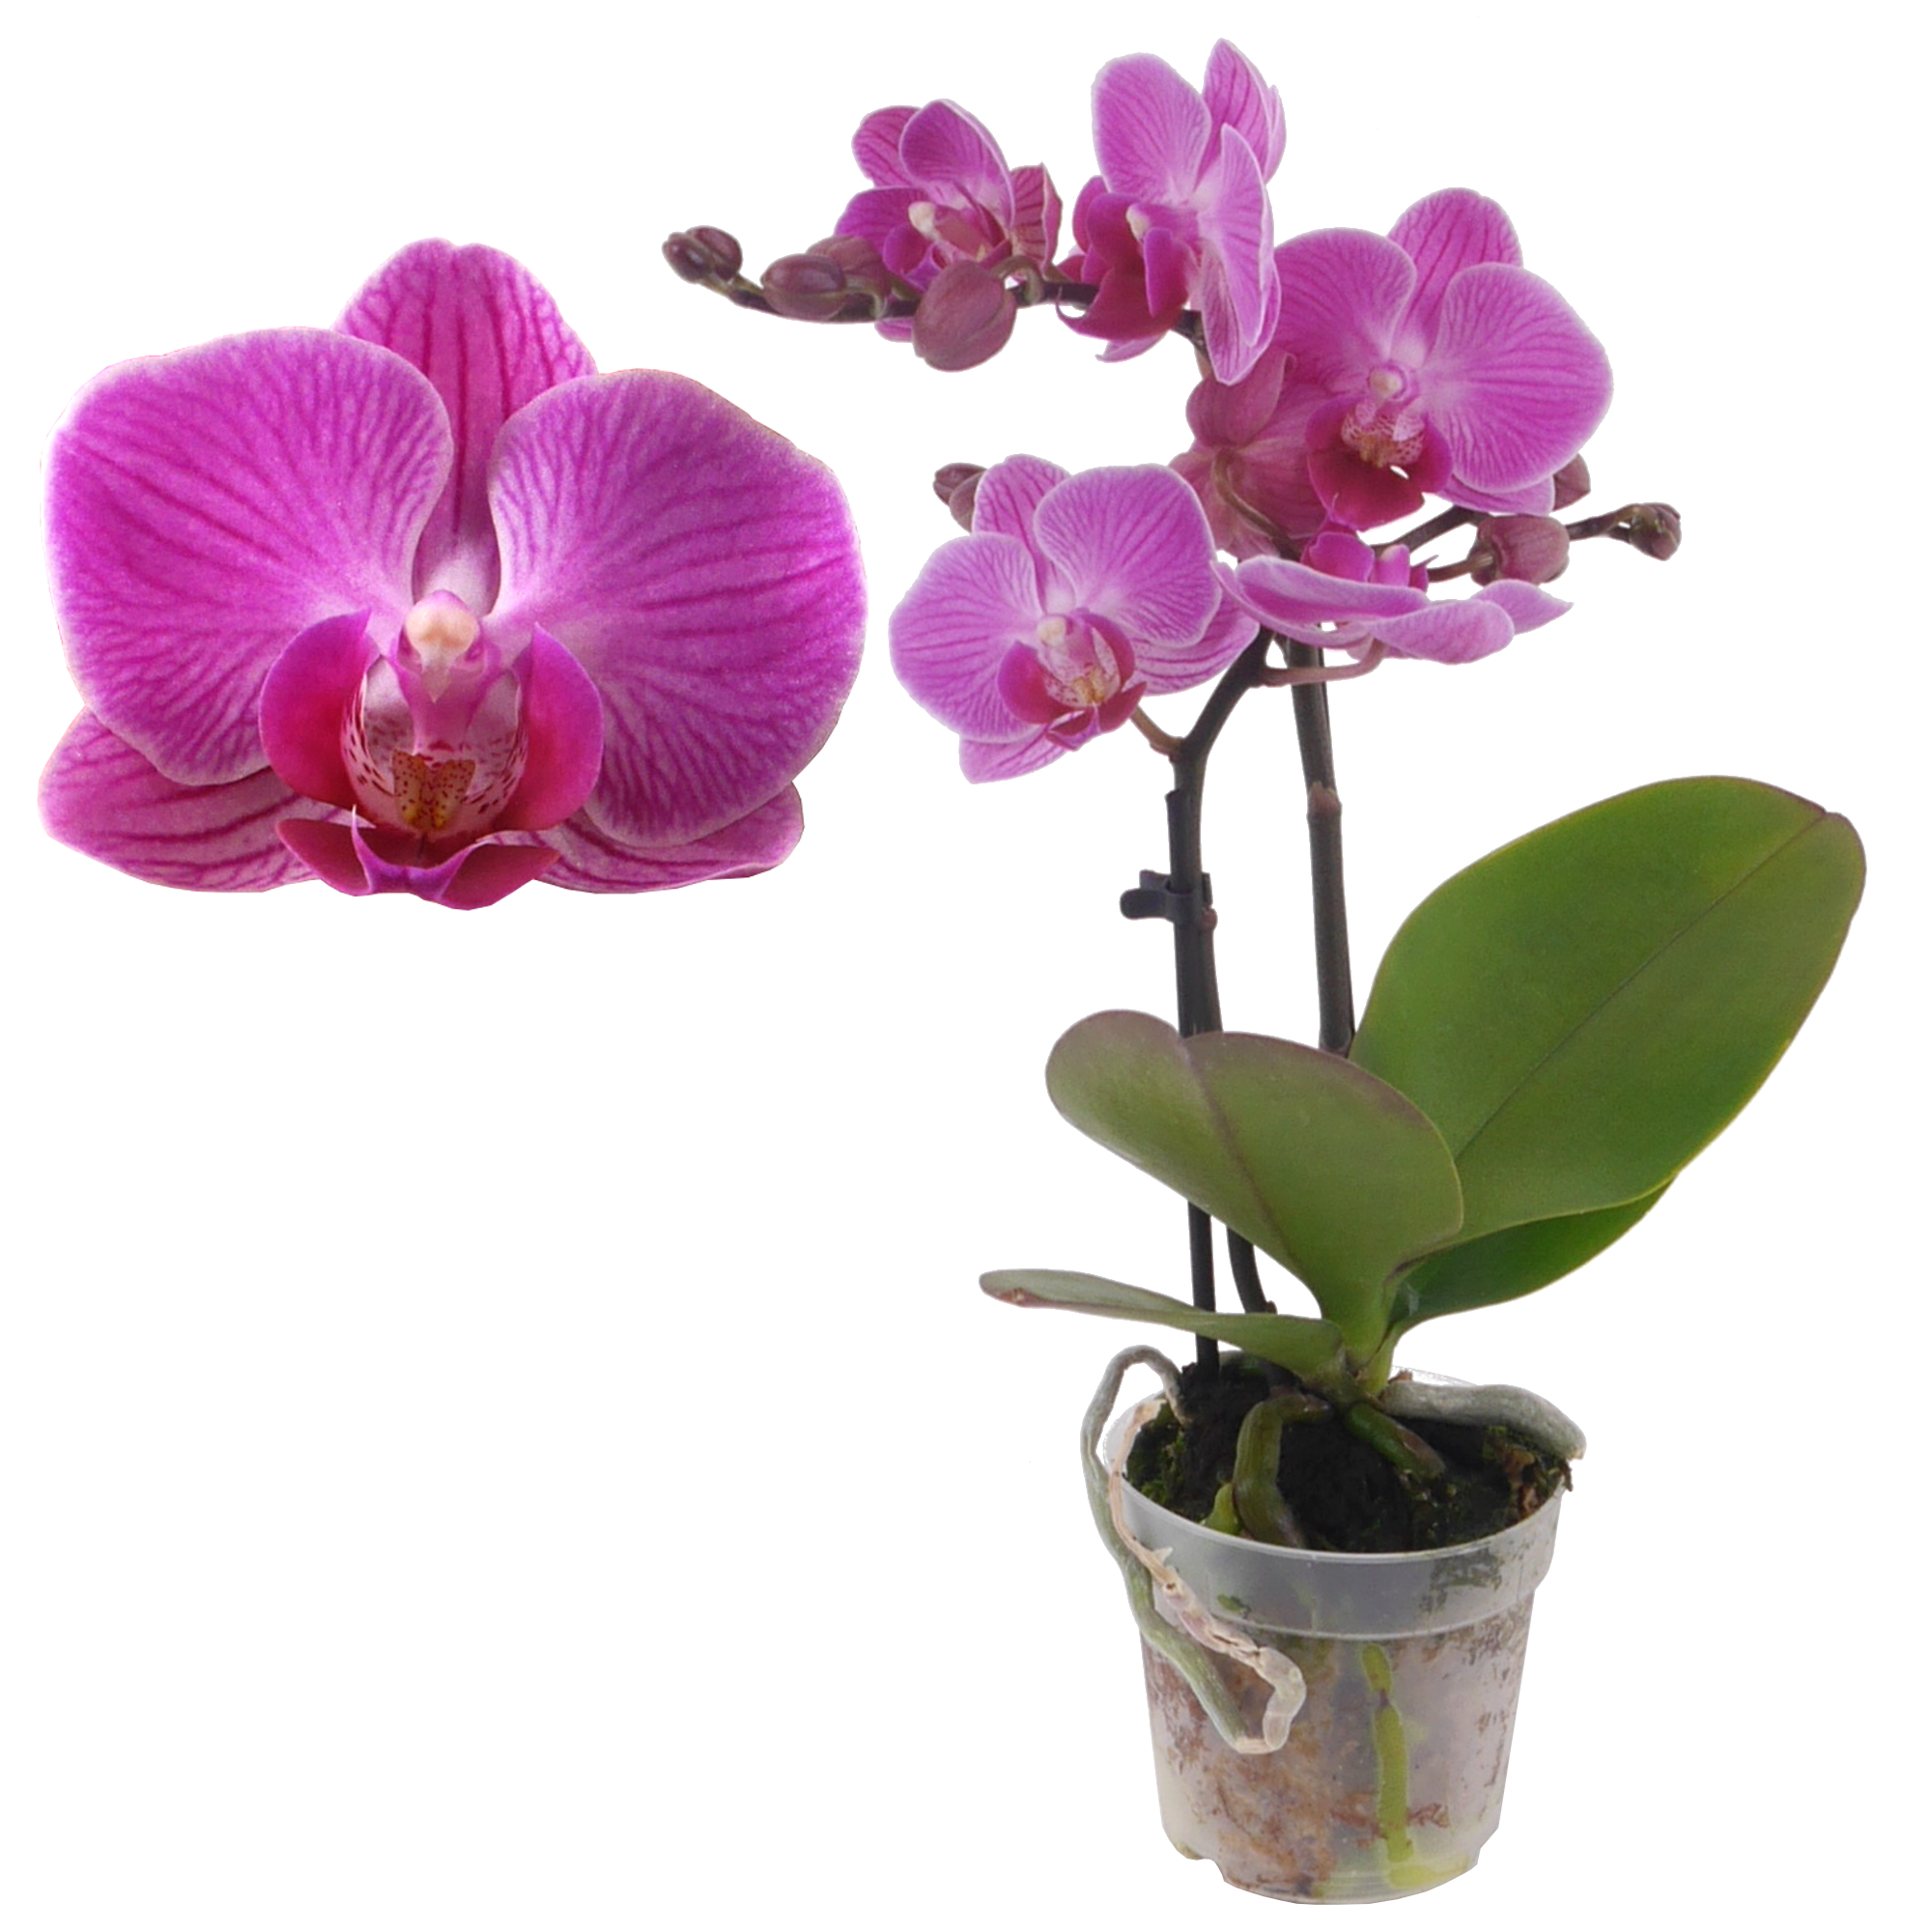 Schmetterlingsorchidee 'Lisa' 2 Rispen pink, 7 cm Topf + product picture